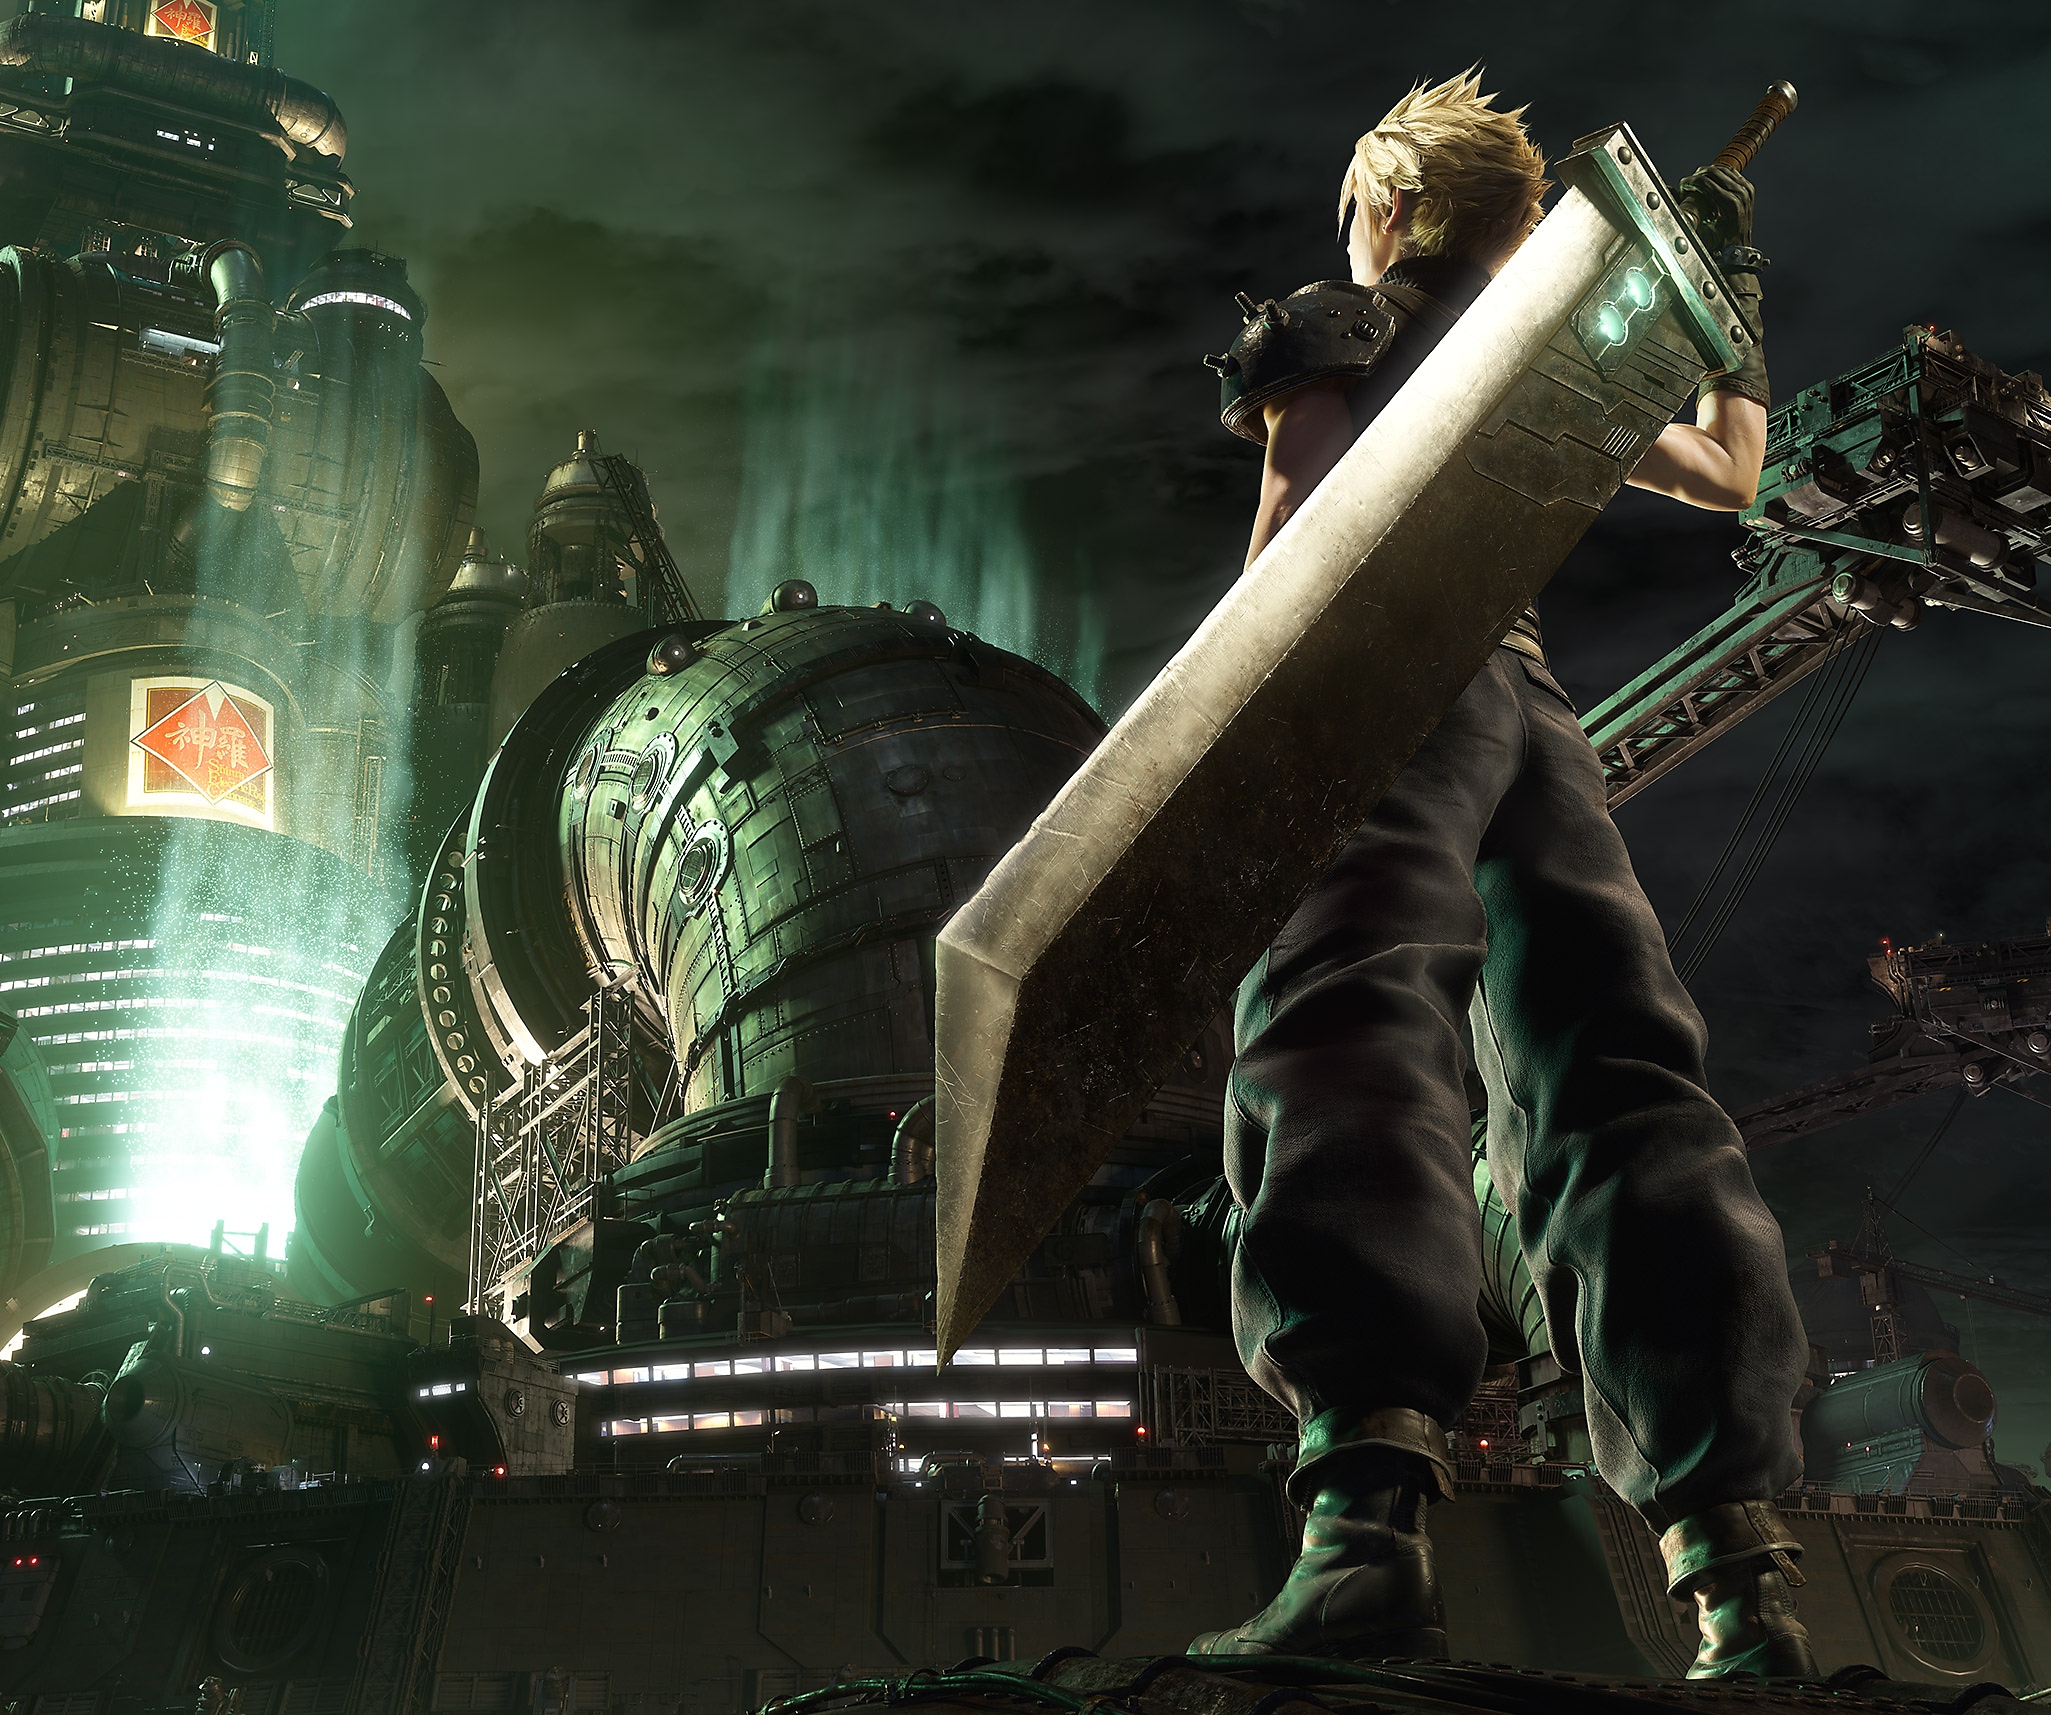 Arte principal de Final Fantasy VII Remake que muestra al personaje principal Cloud parado frente a los cuarteles de Shinra.